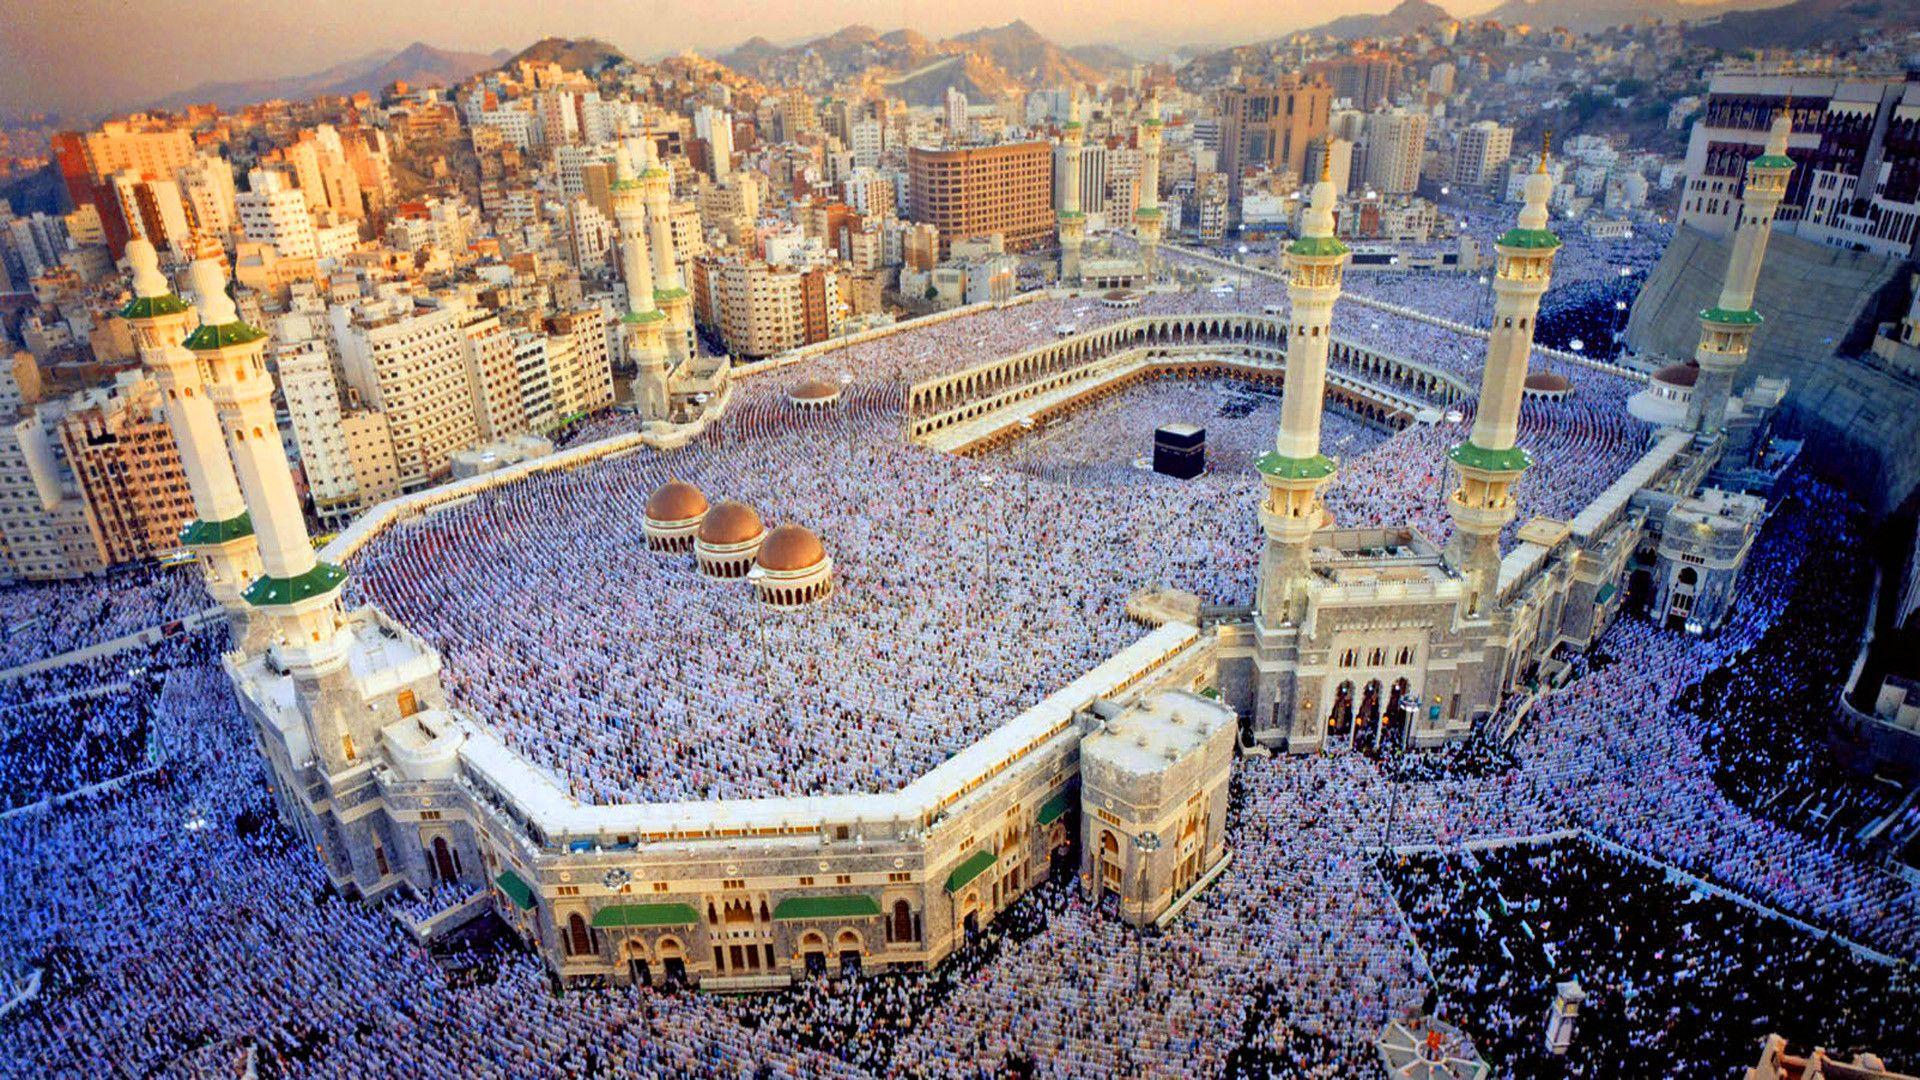 Город мекка и медина. Мечеть Аль-харам (Запретная мечеть), Мекка. Саудовская Аравия Мекка Кааба. Мечети Мекки и Медины. Масджид Аль-харам – Мекка, Саудовская Аравия.